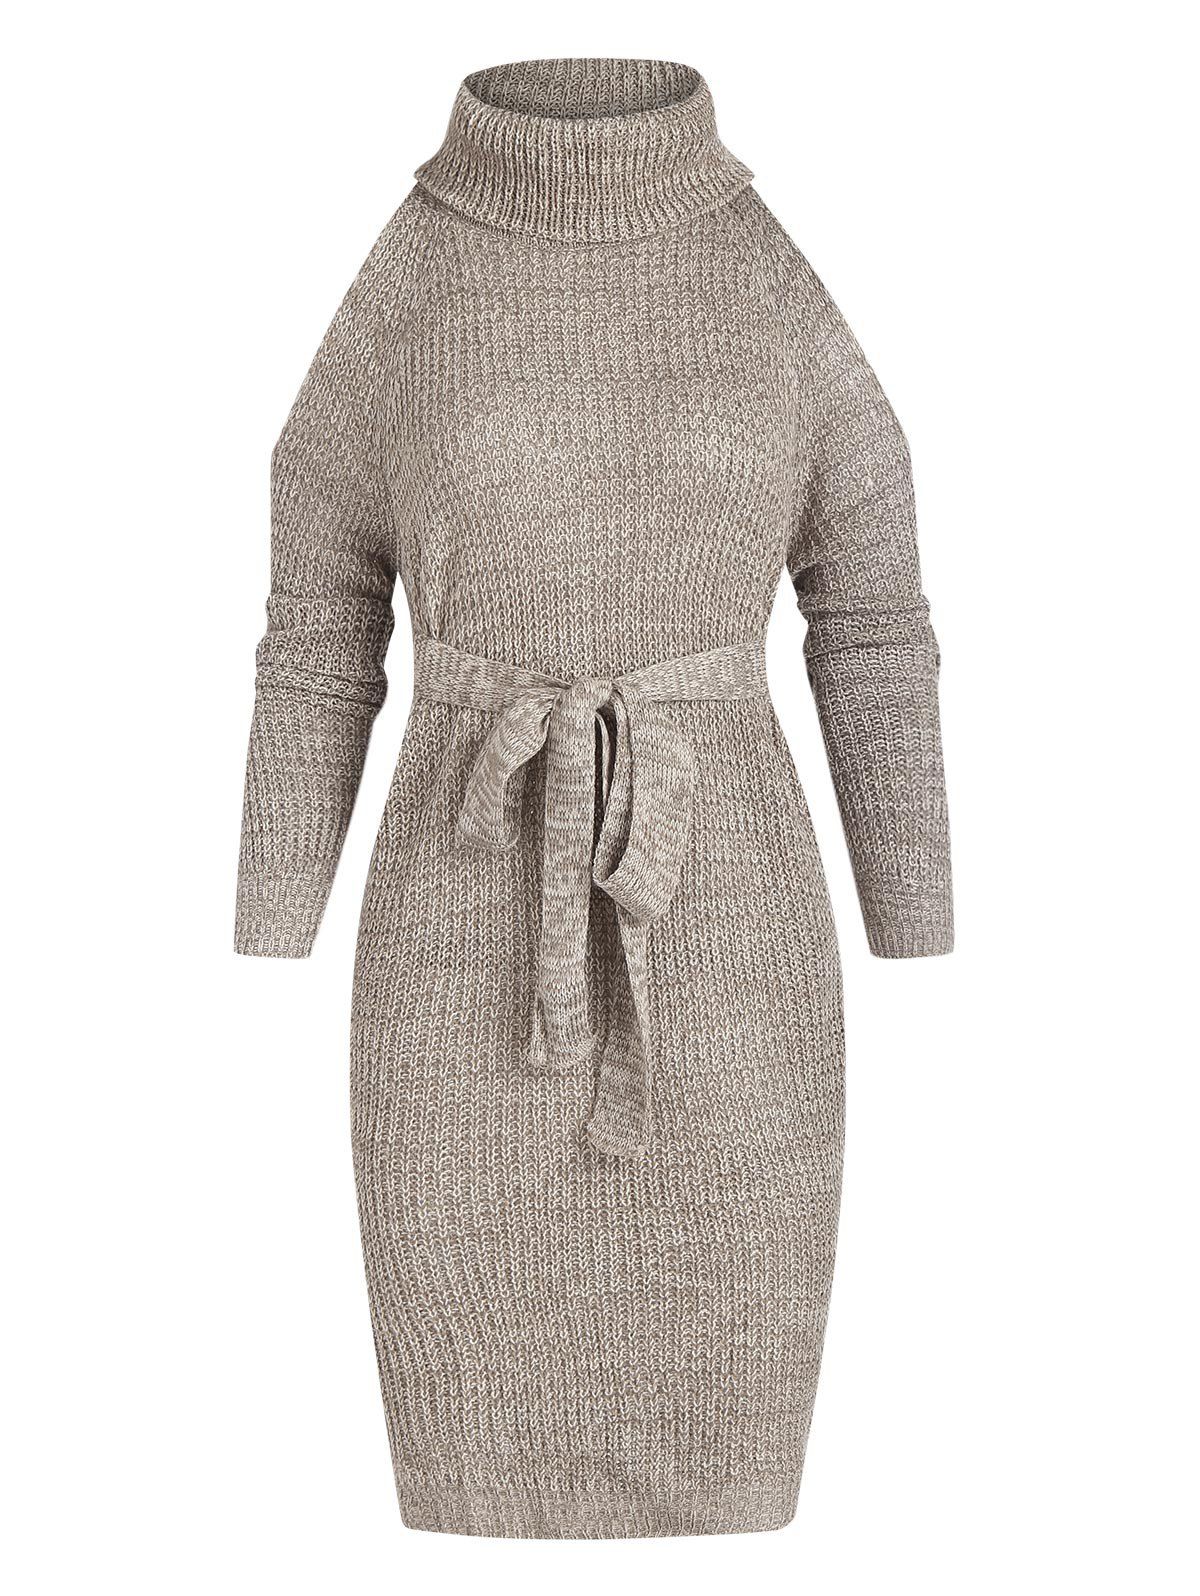 Turtleneck Cold Shoulder Sweater Dress - GRAY L